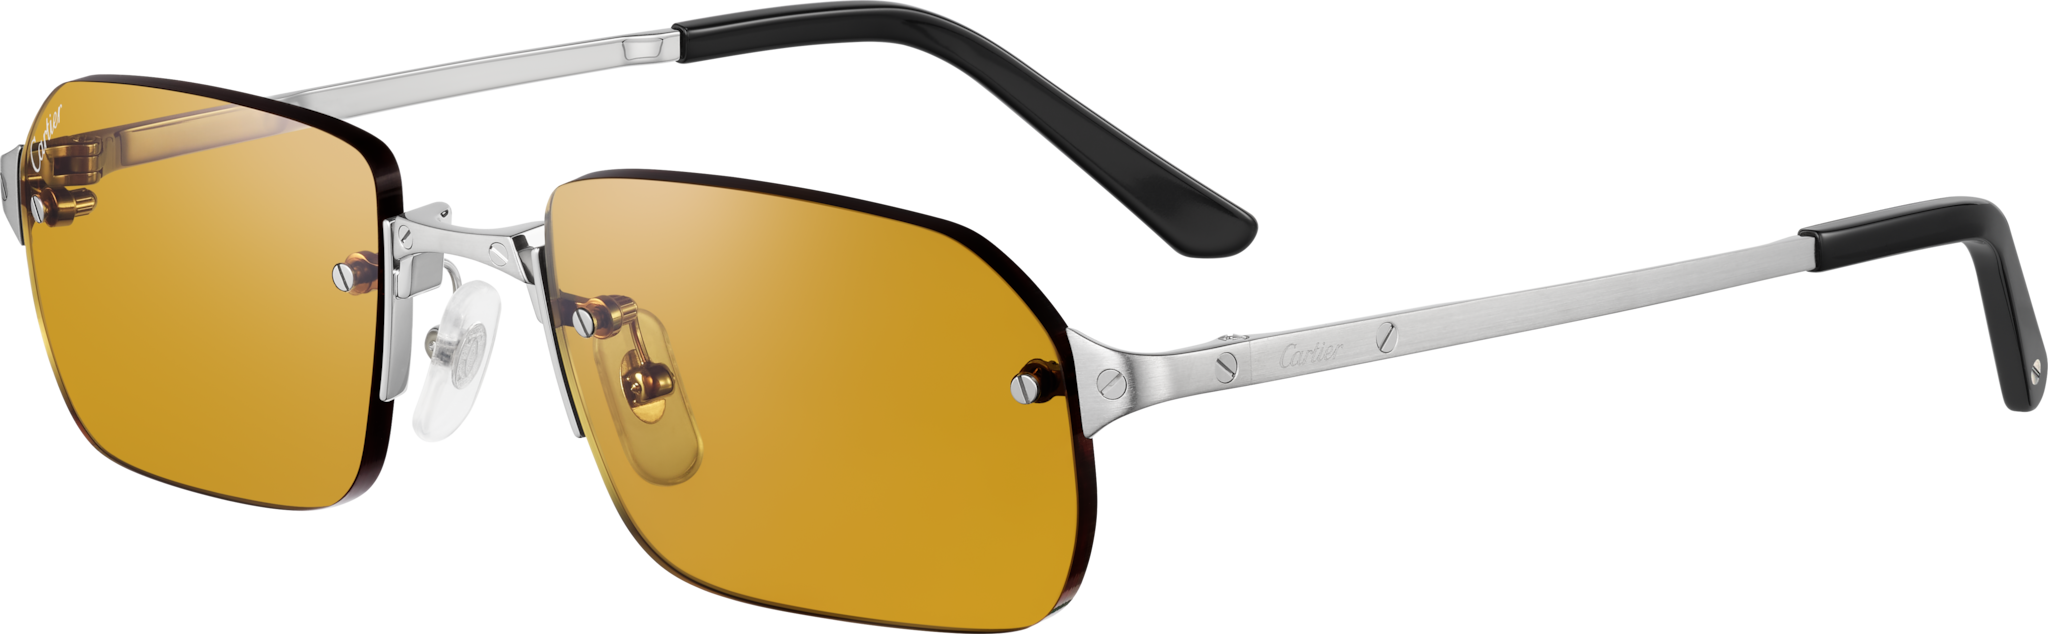 Gafas de sol Santos de CartierMetal acabado dorado liso y cepillado, lentes marrones